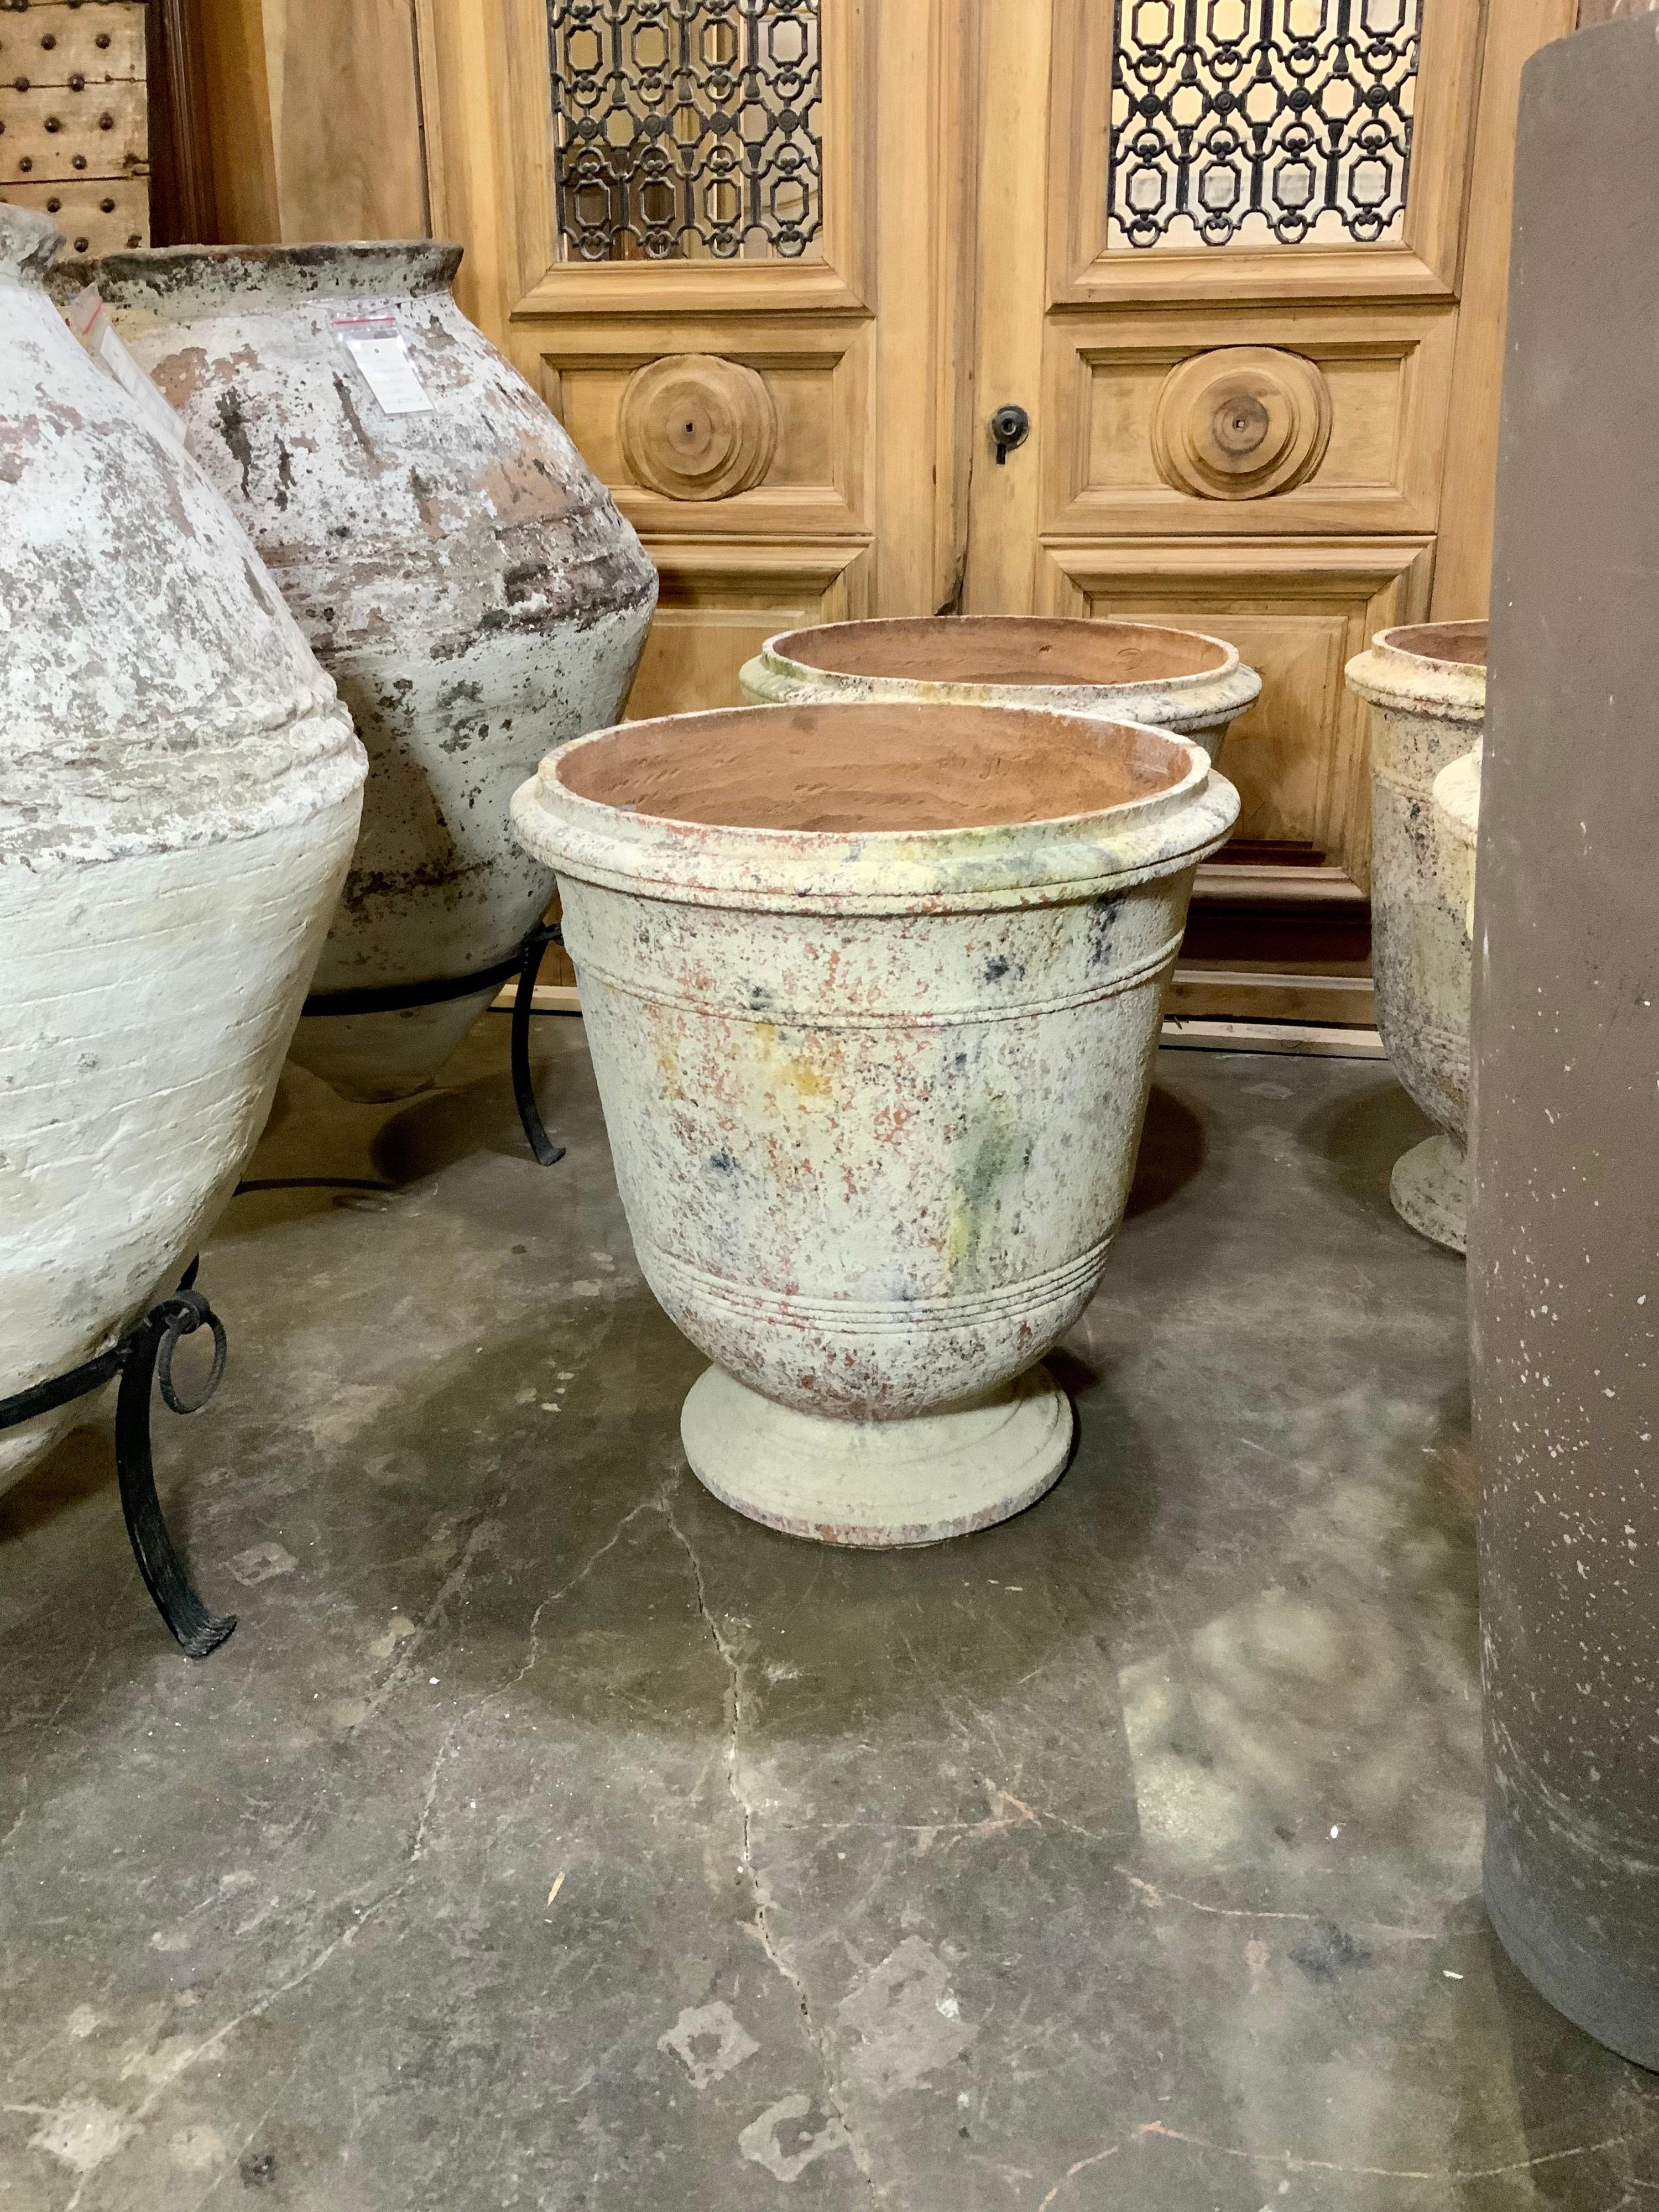 Diese große Terrakotta-Urne stammt aus der Provence in Frankreich.

Zeitgenössisch, handgefertigt.